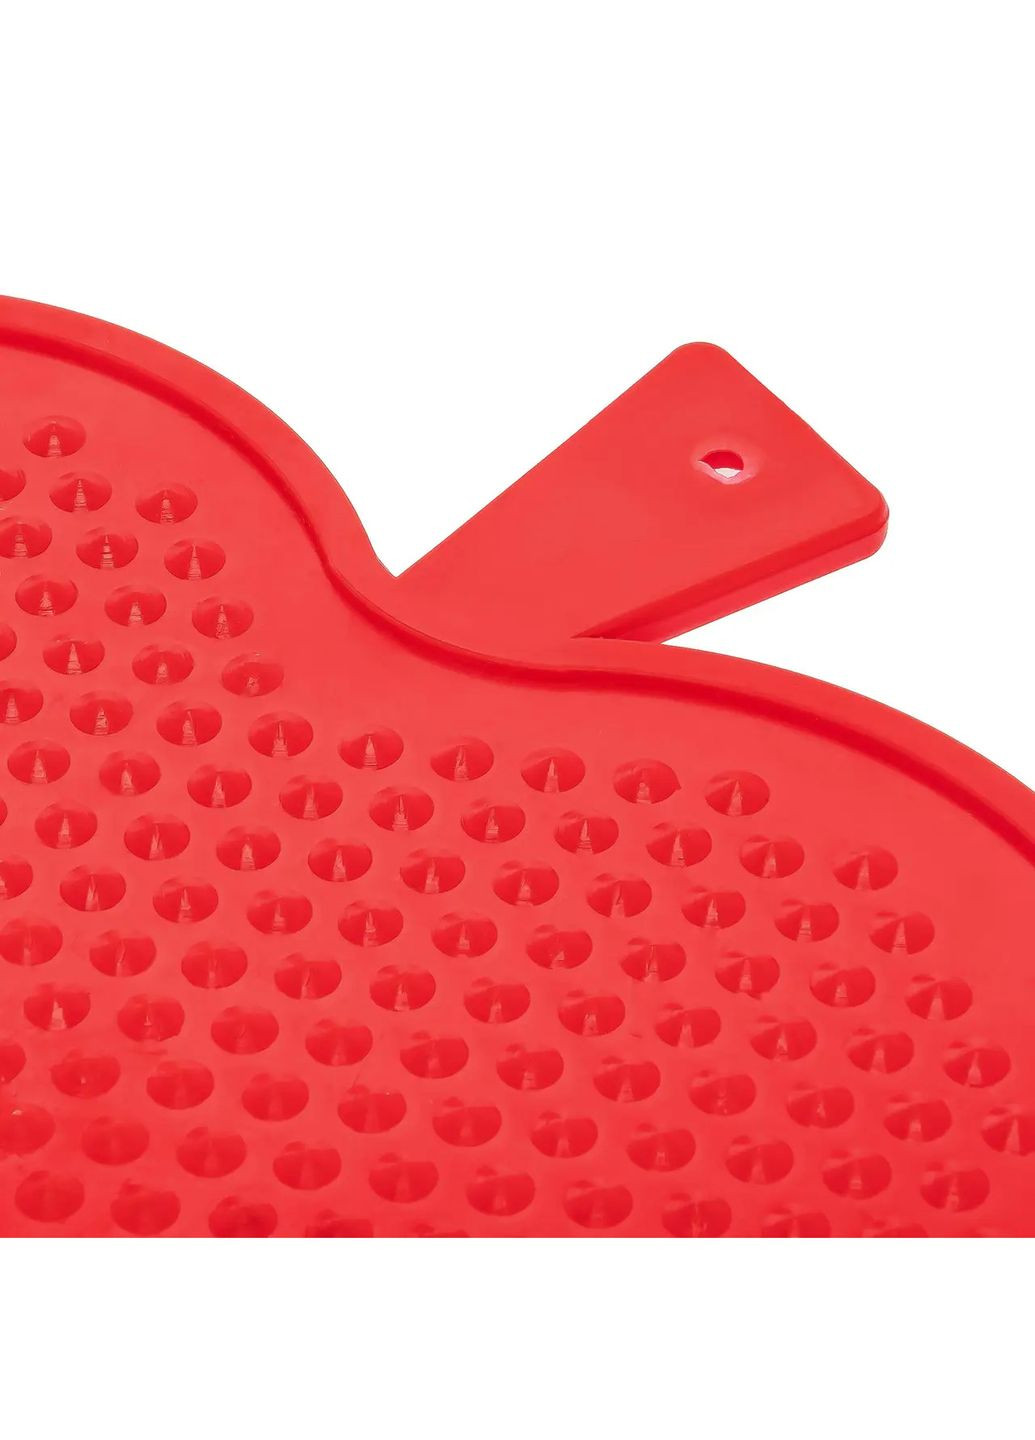 Доска разделочная пластиковая для нарезки мяса, рыбы, овощей и фруктов в форме яблока (220х210 мм) Красный Kitchette (263346517)